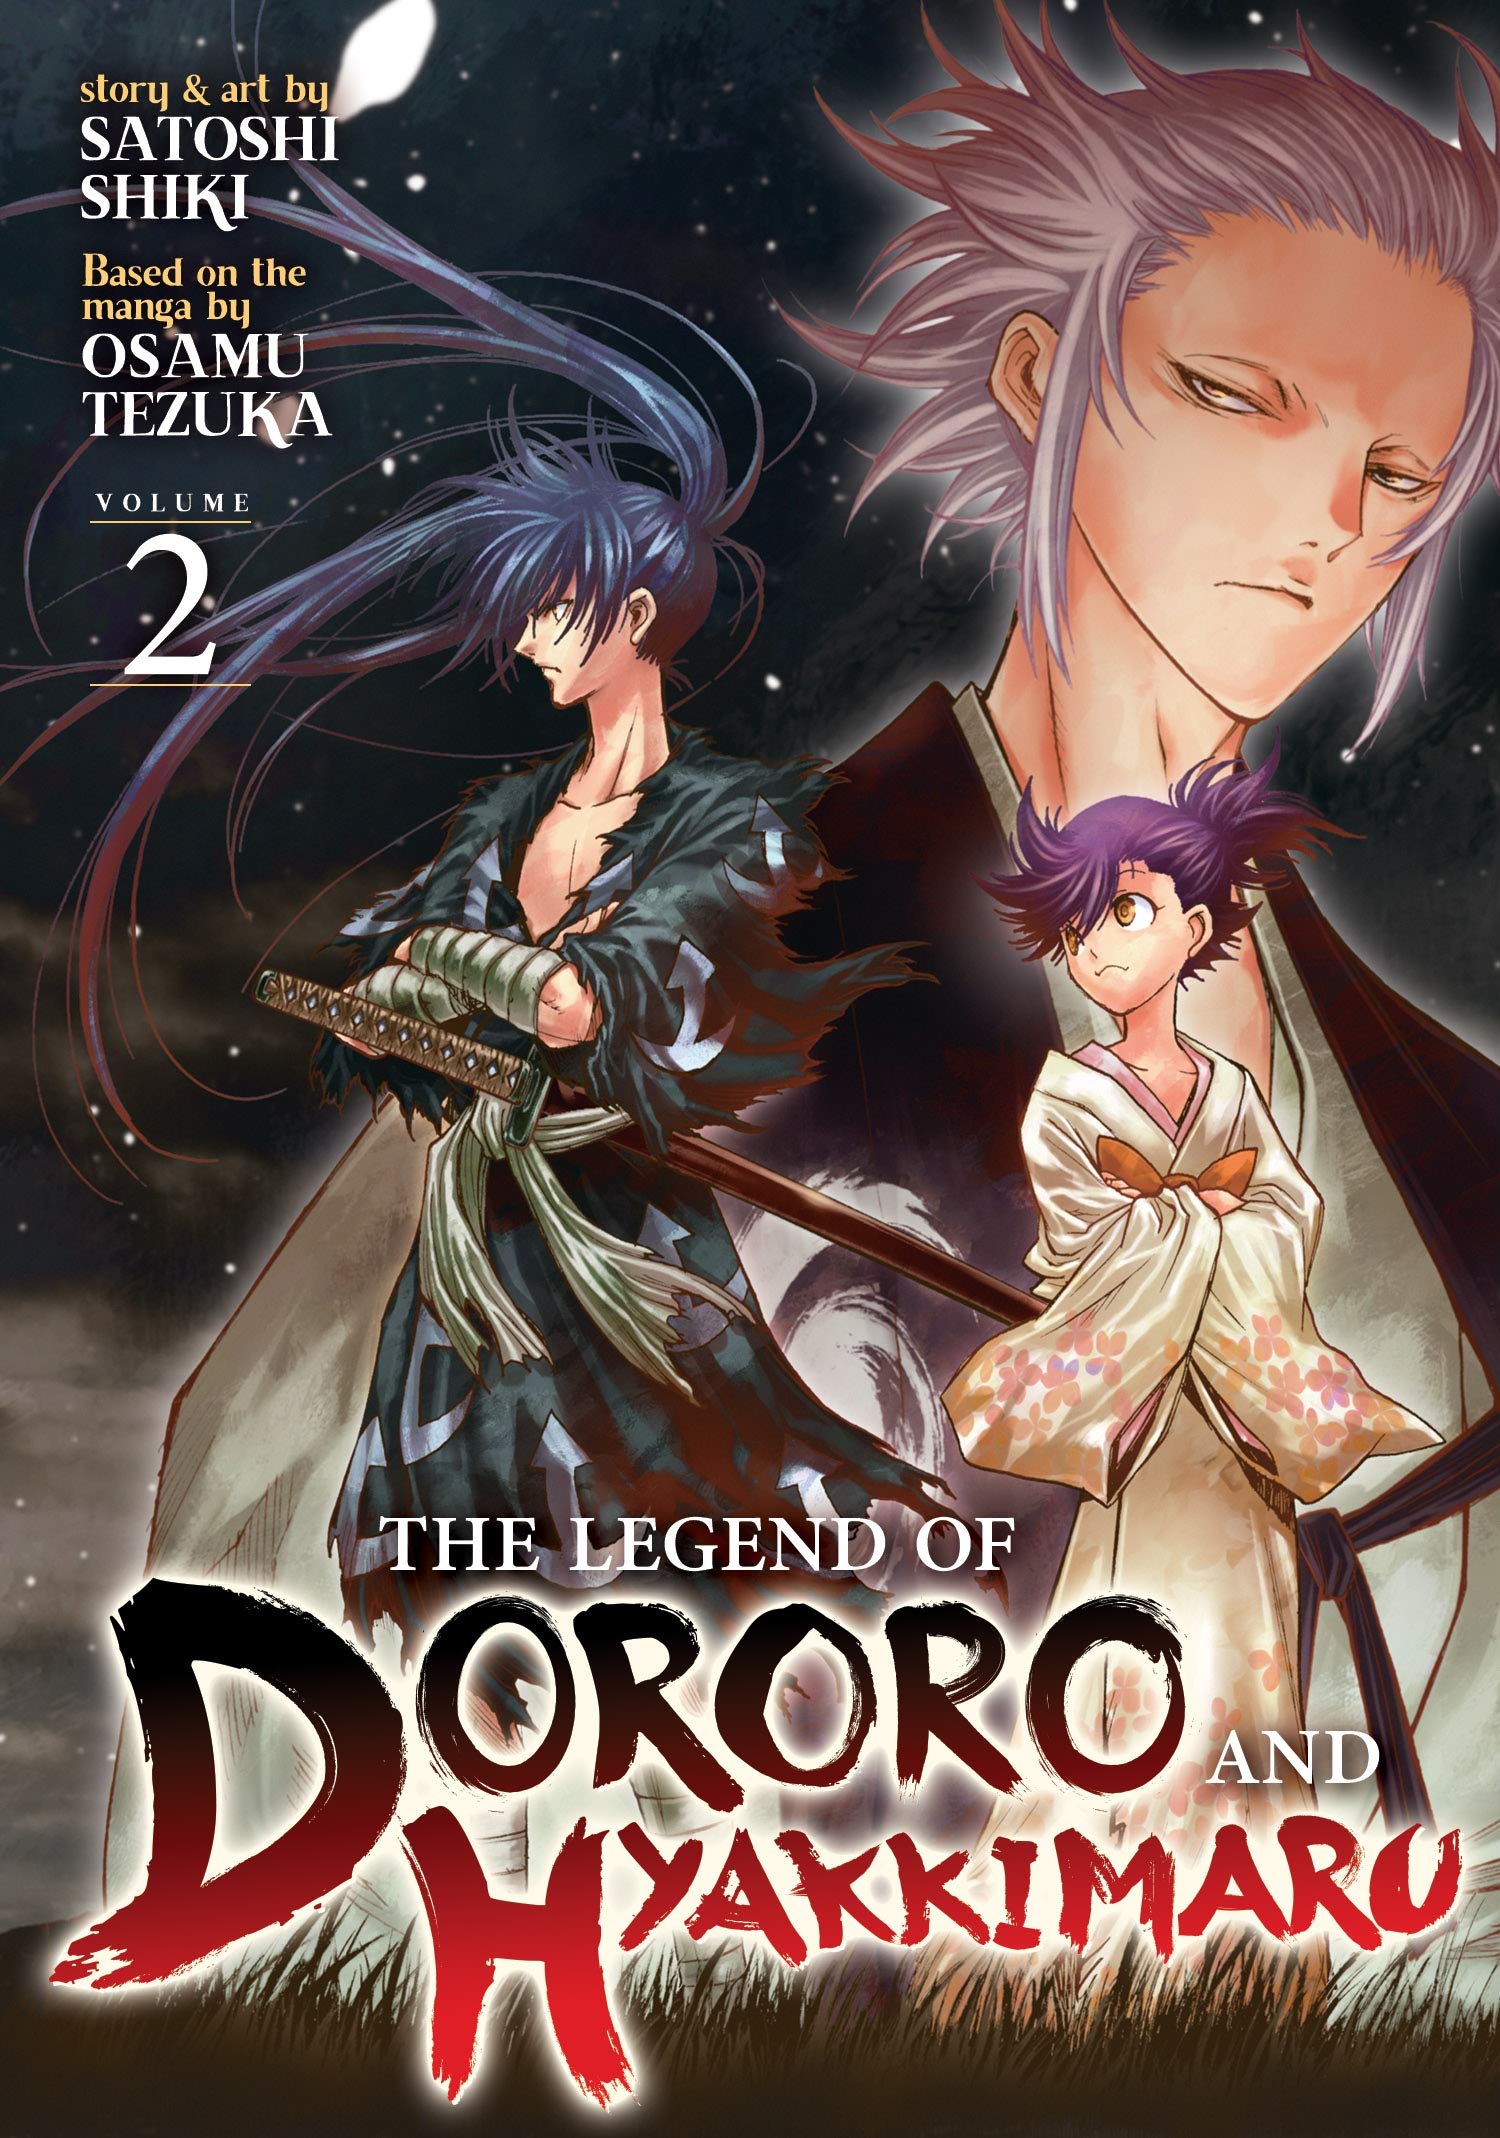 The Legend of Dororo and Hyakkimaru. Vol. 2